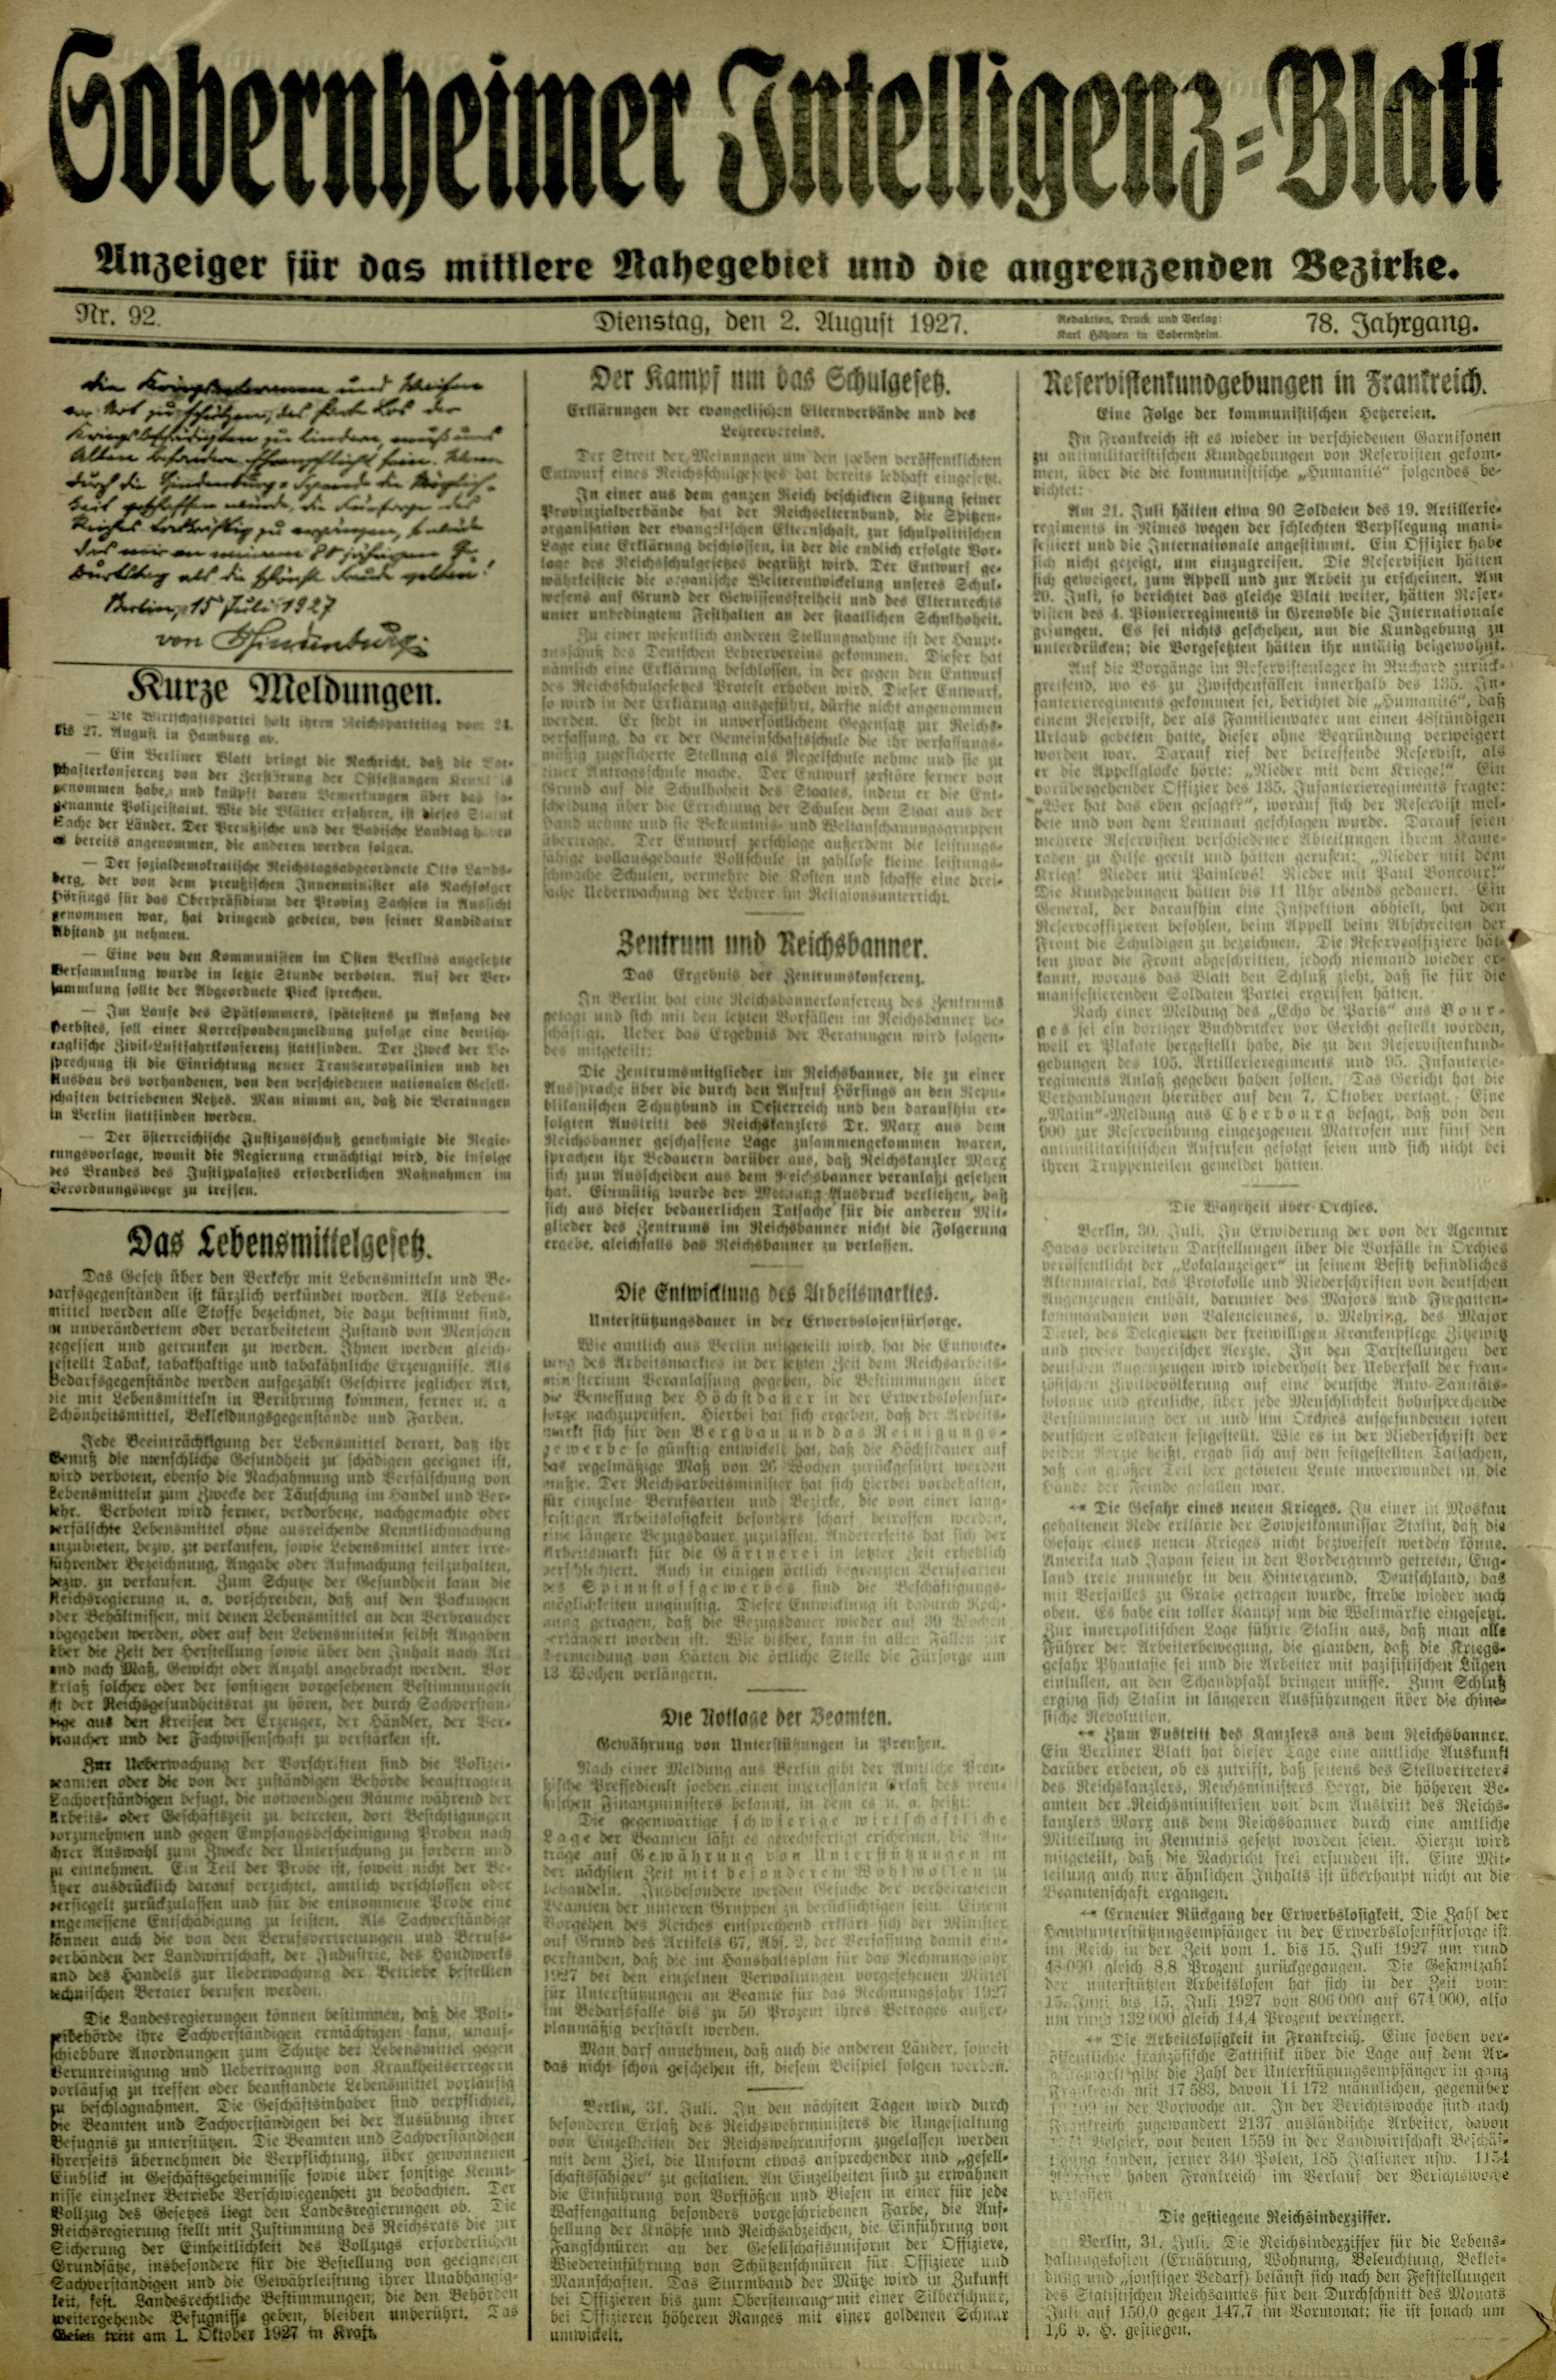 Zeitung: Sobernheimer Intelligenzblatt; August 1927, Jg. 78 Nr. 92 (Heimatmuseum Bad Sobernheim CC BY-NC-SA)